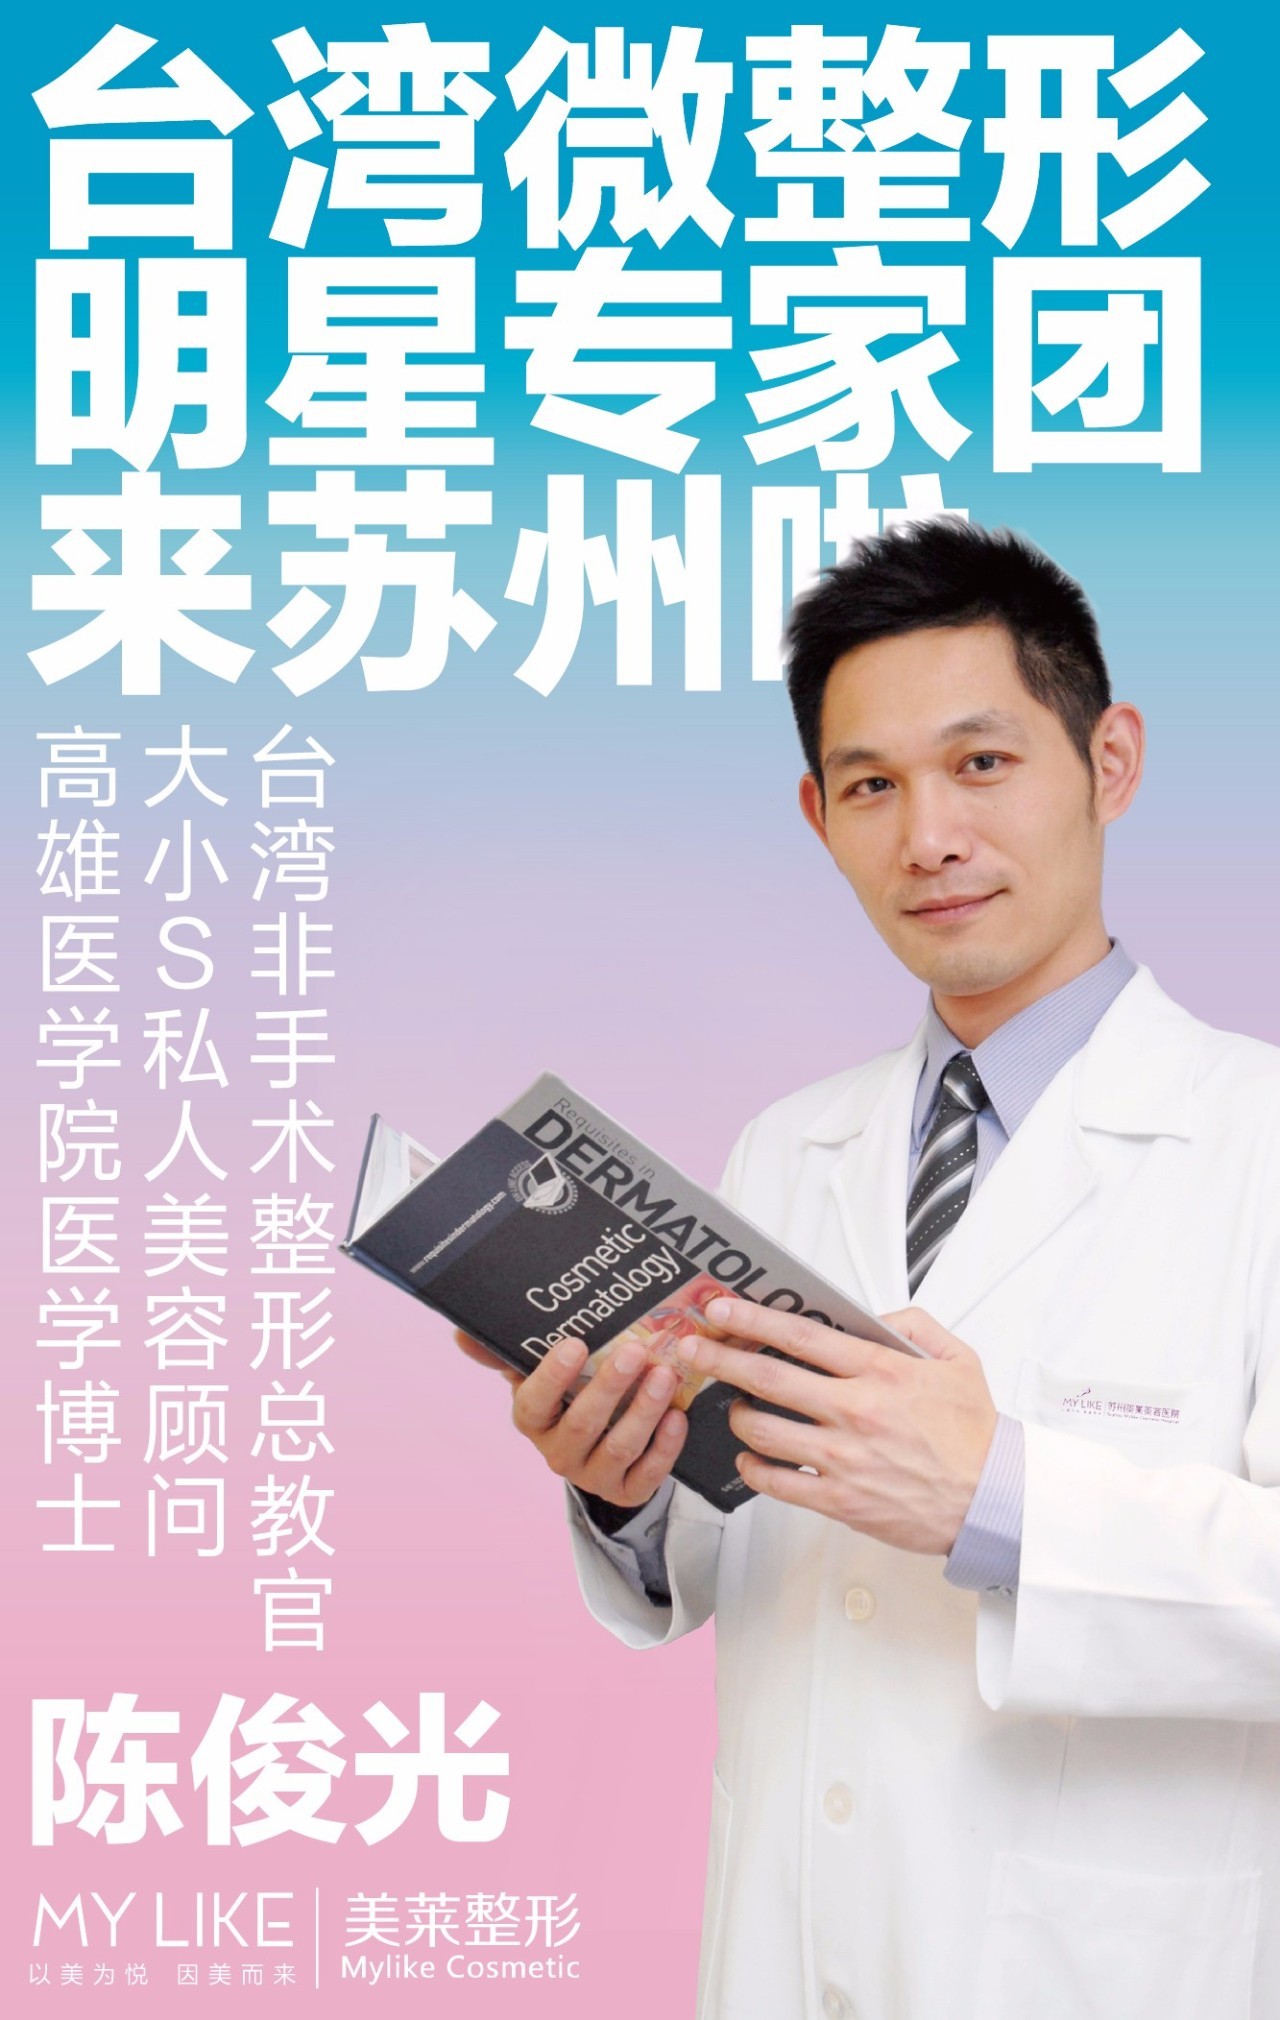 陈 俊 光高雄医学院医学博士大小s私人美容顾问台湾非手术微整形总